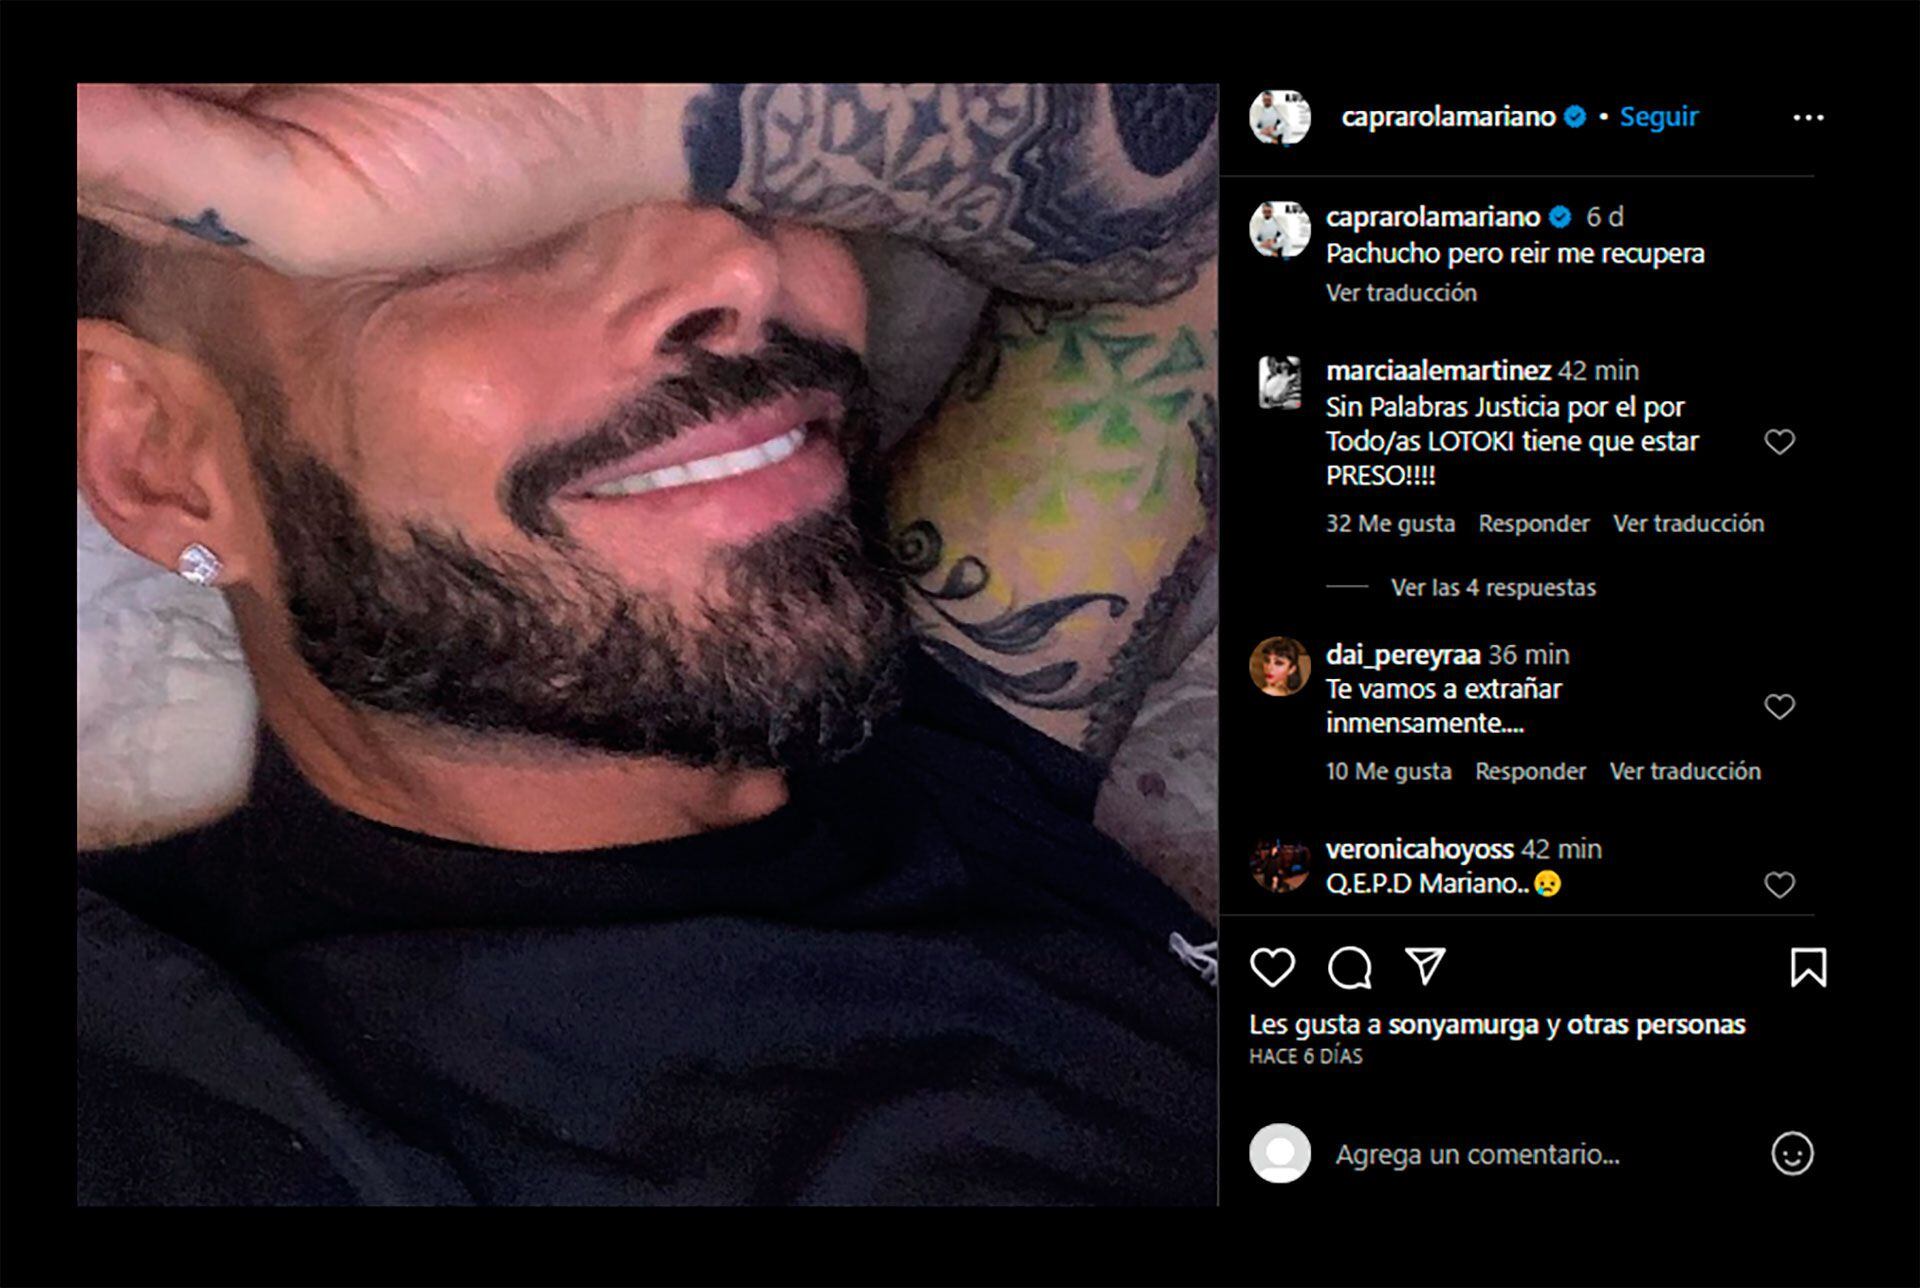 Dos de los últimos mensajes de Mariano Caprarola en las redes sociales daban cuenta de su estado de salud (Fotos: Instagram)